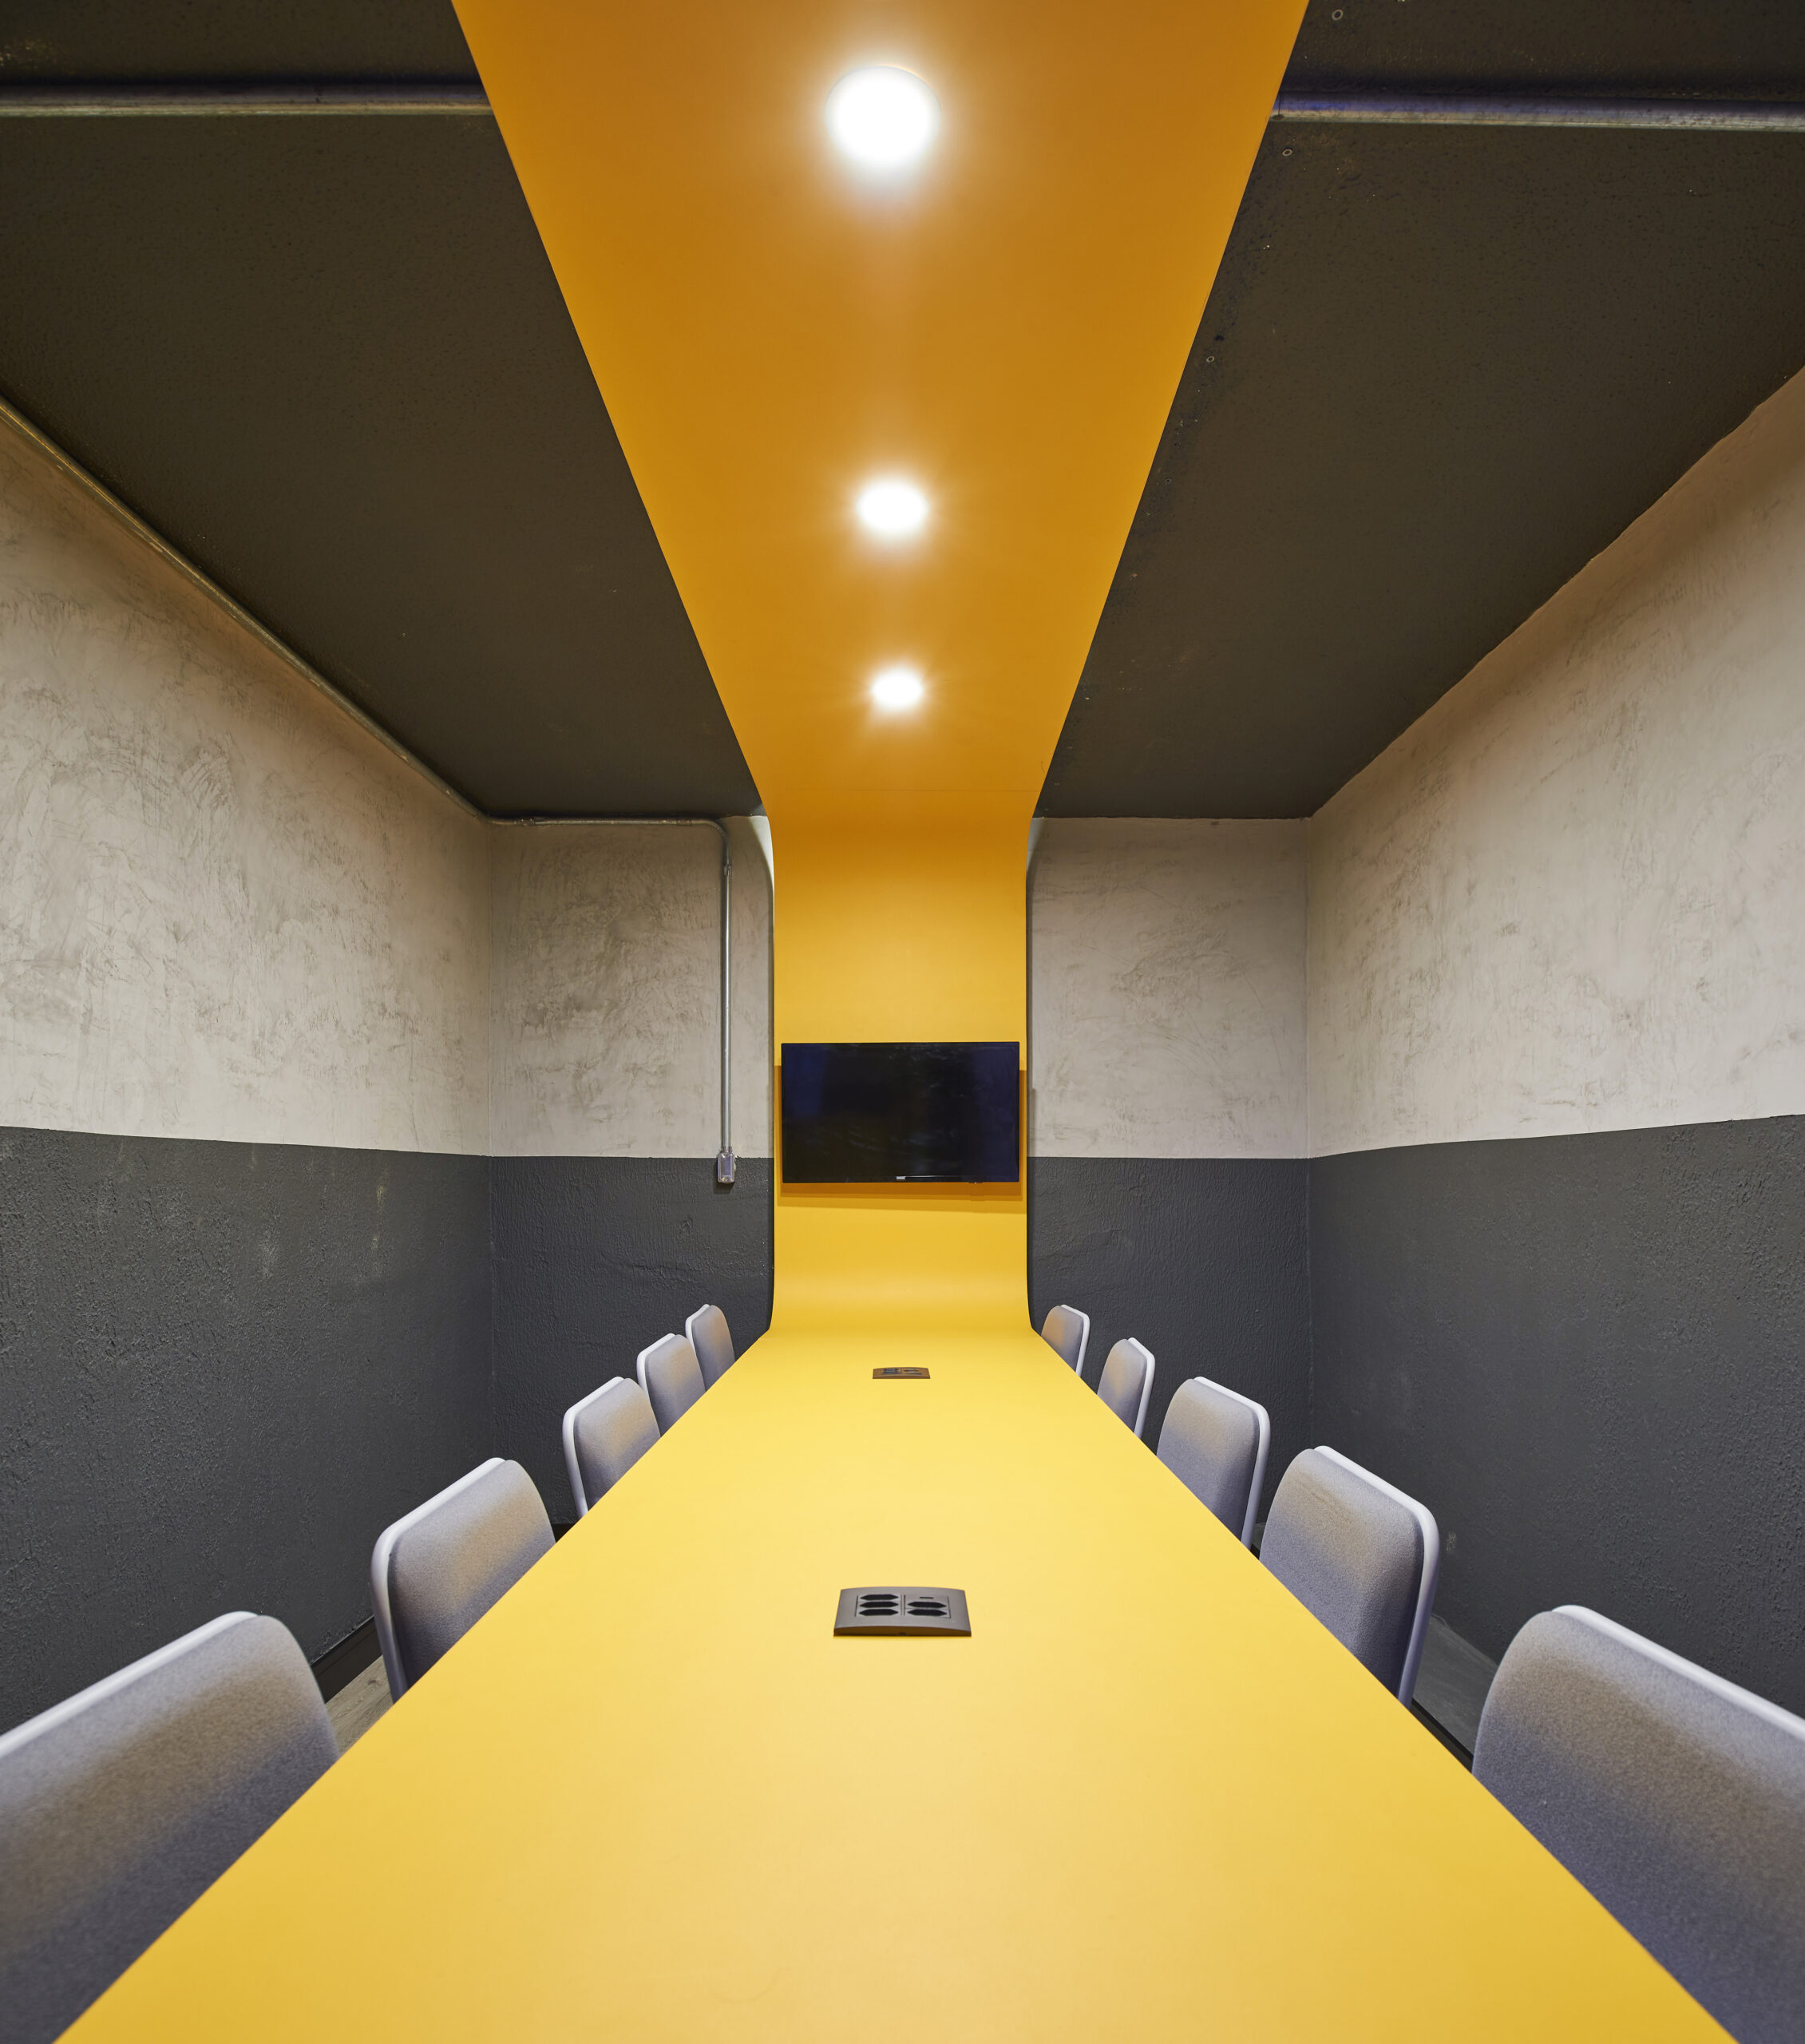 efeito ótico do tampo da mesa de sala de reunião que se conecta até o teto através de uma extensão de madeira